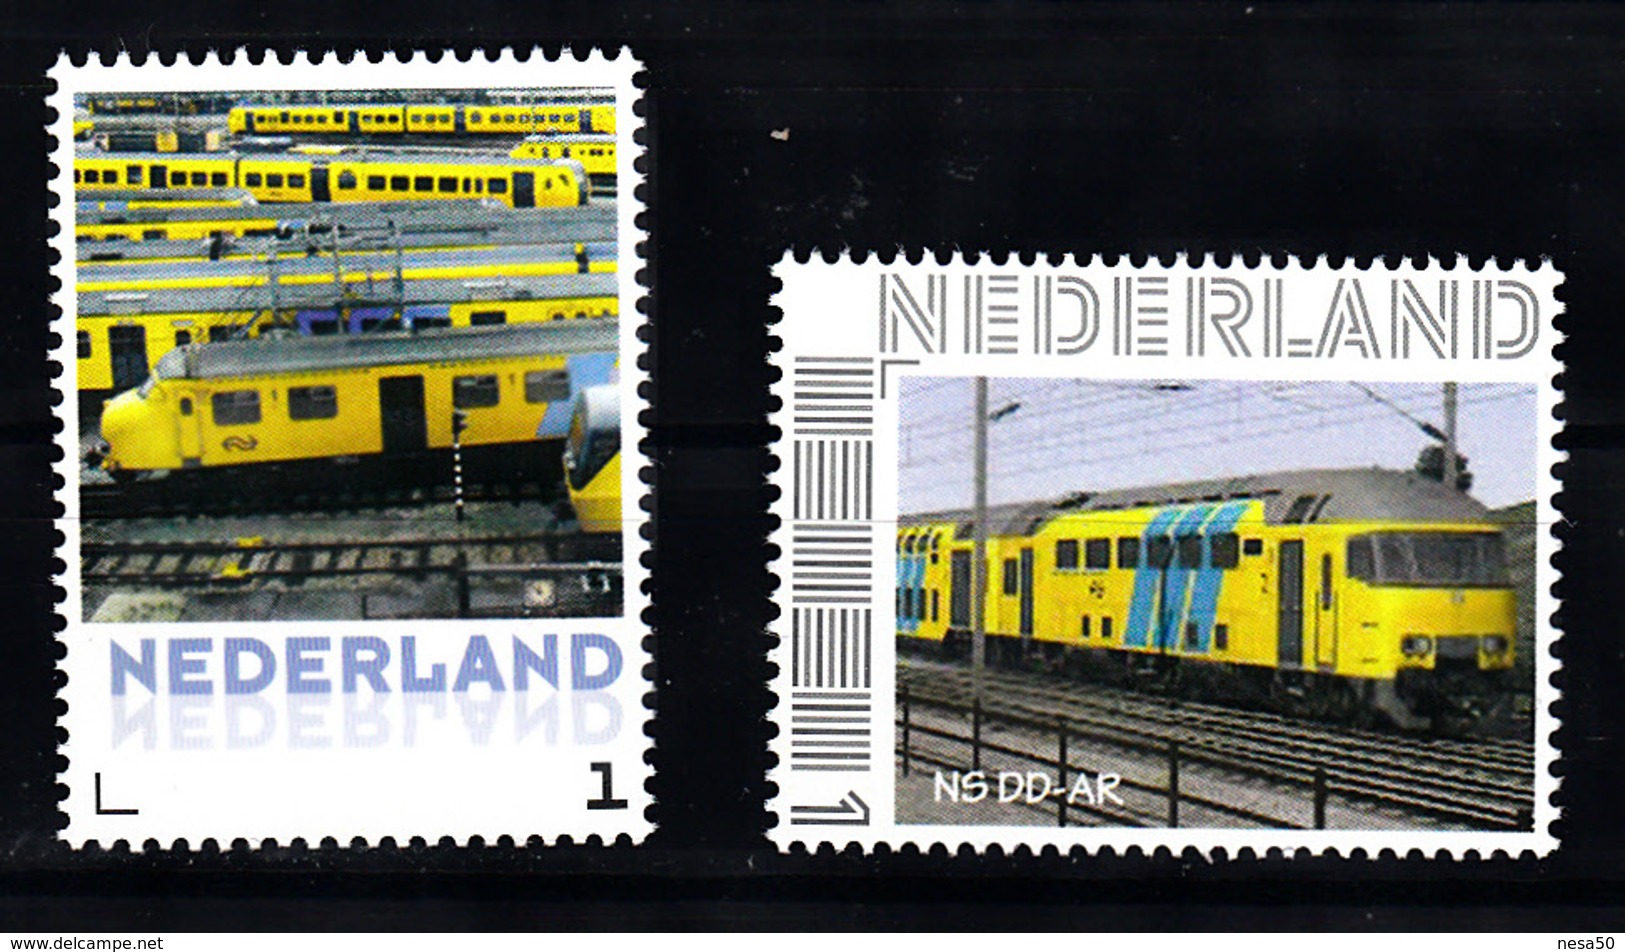 Trein, Train, Eisenbahn, Nederland Persoonlijke Zegel: NS Parkeren + NS DD - AR - Treinen